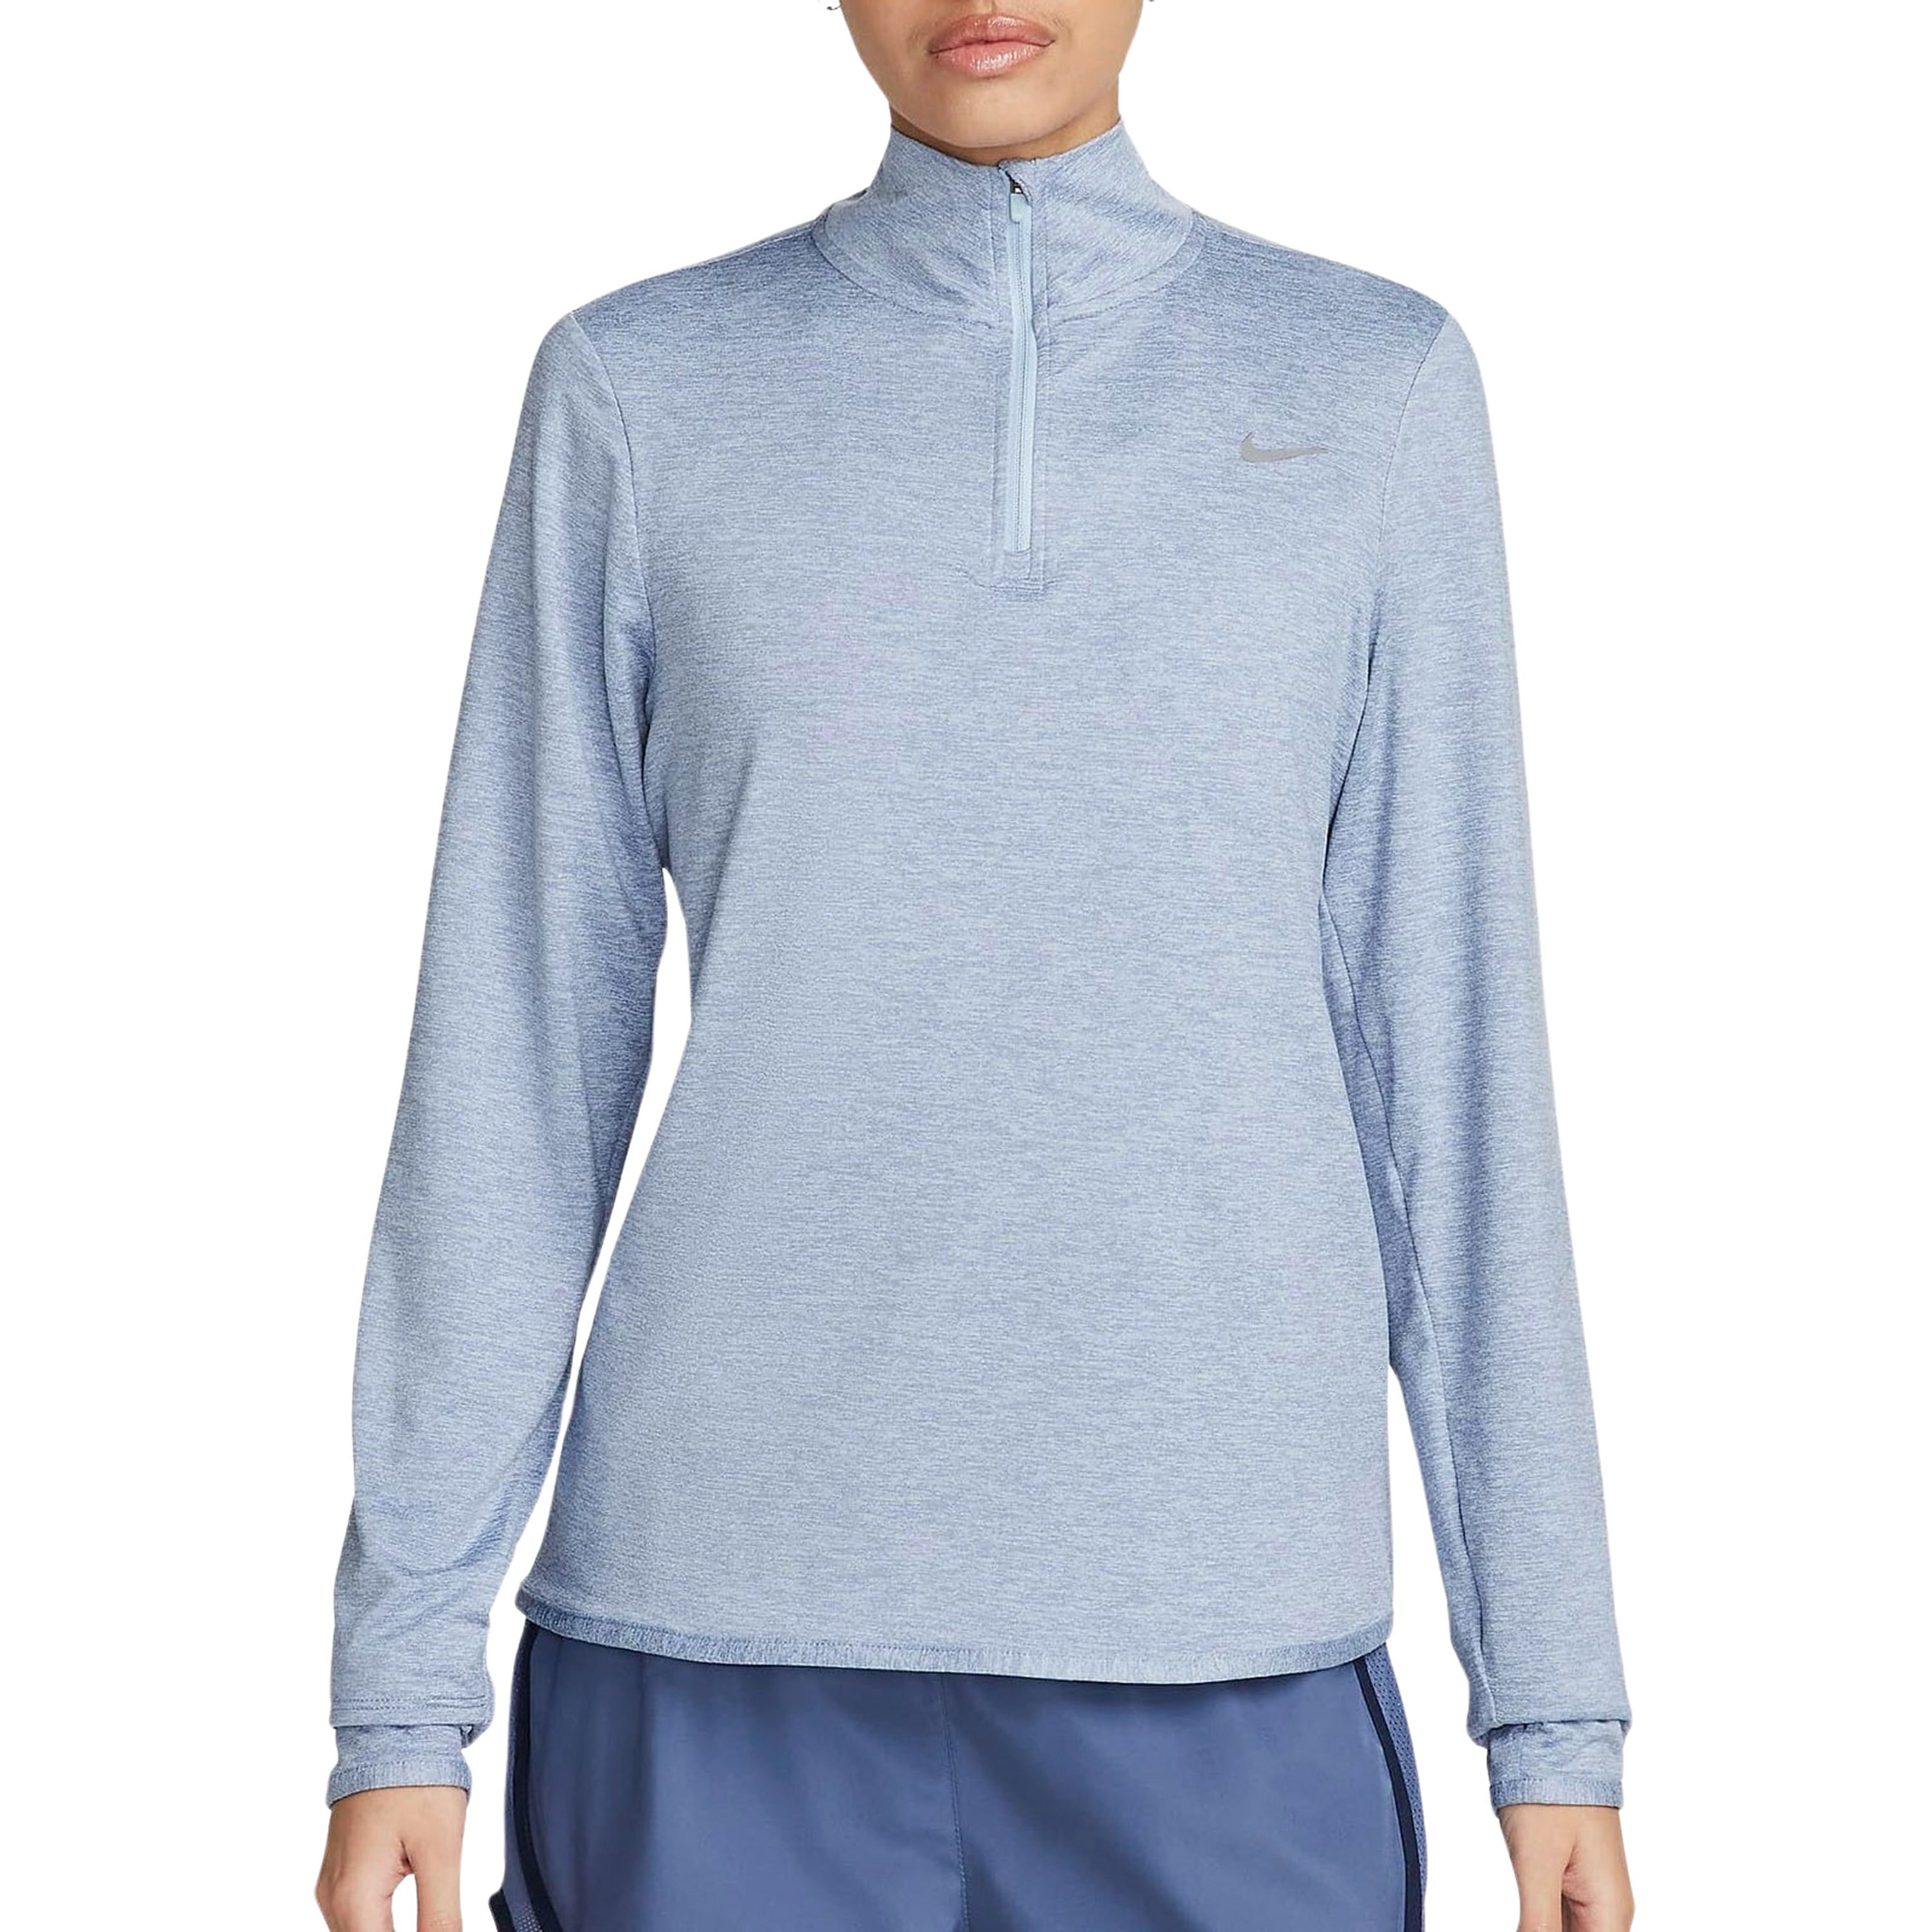 Nike Swift hardlooptop met korte rits en UV-bescherming voor dames Blauw